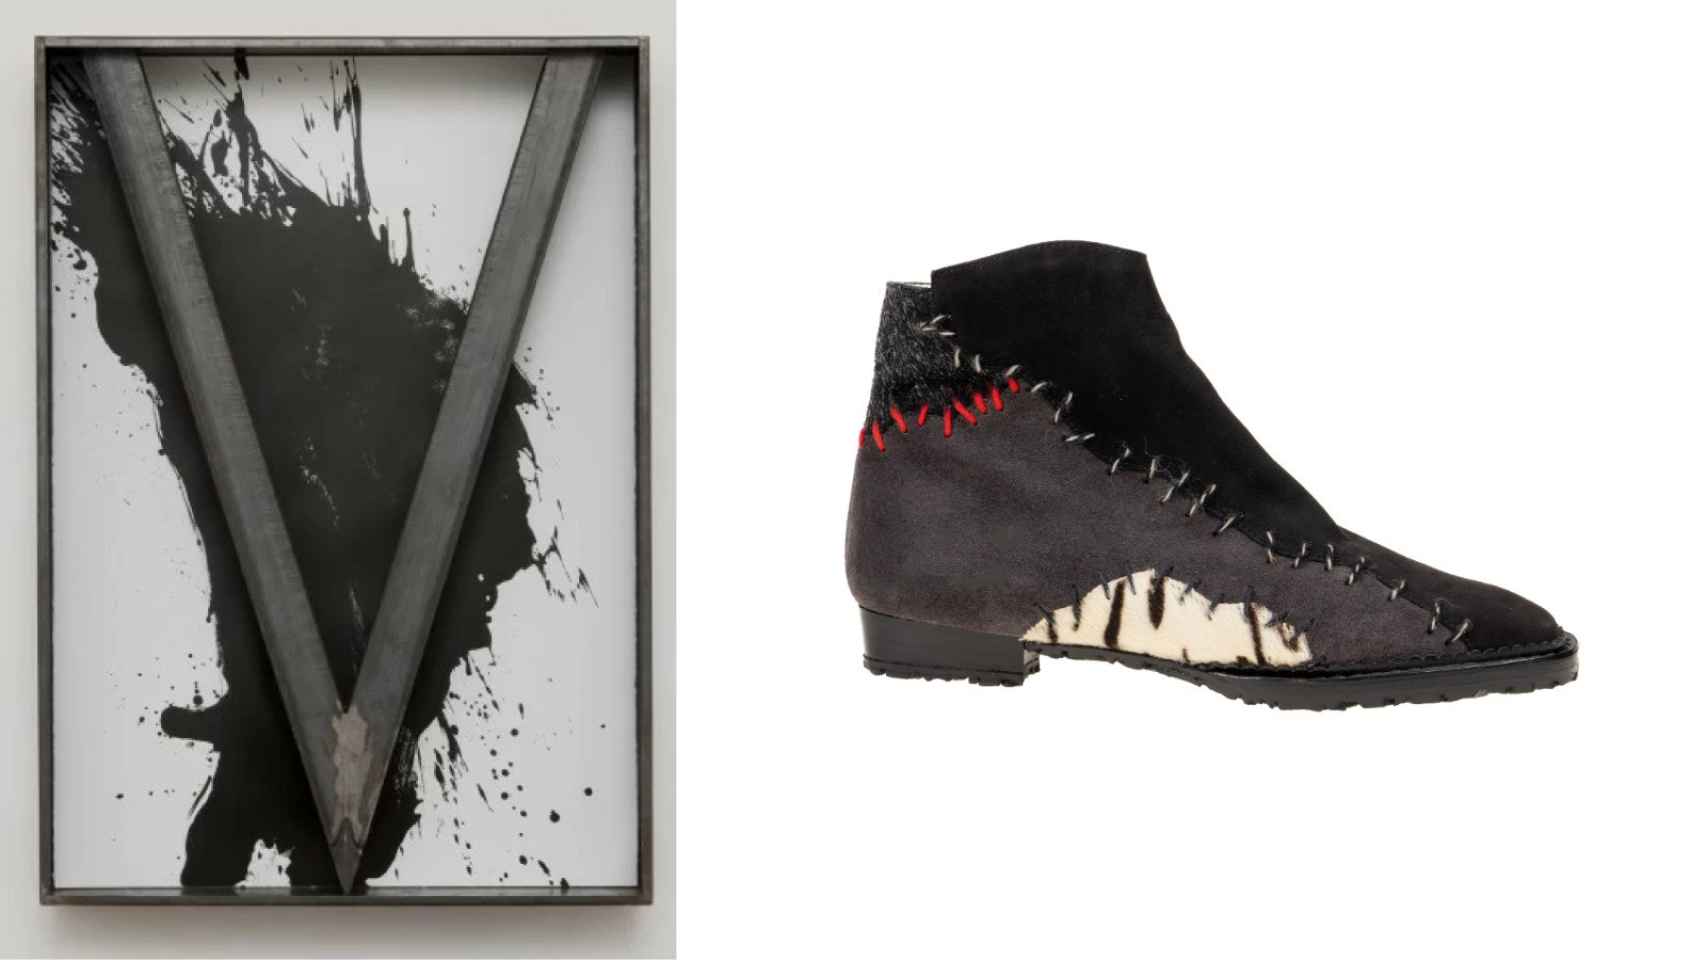 La exhibición sitúa la obra de la diseñadora de zapatos Sara Navarro en relación con el arte que la inspira, como el cuadro de Jannis Kounelis.